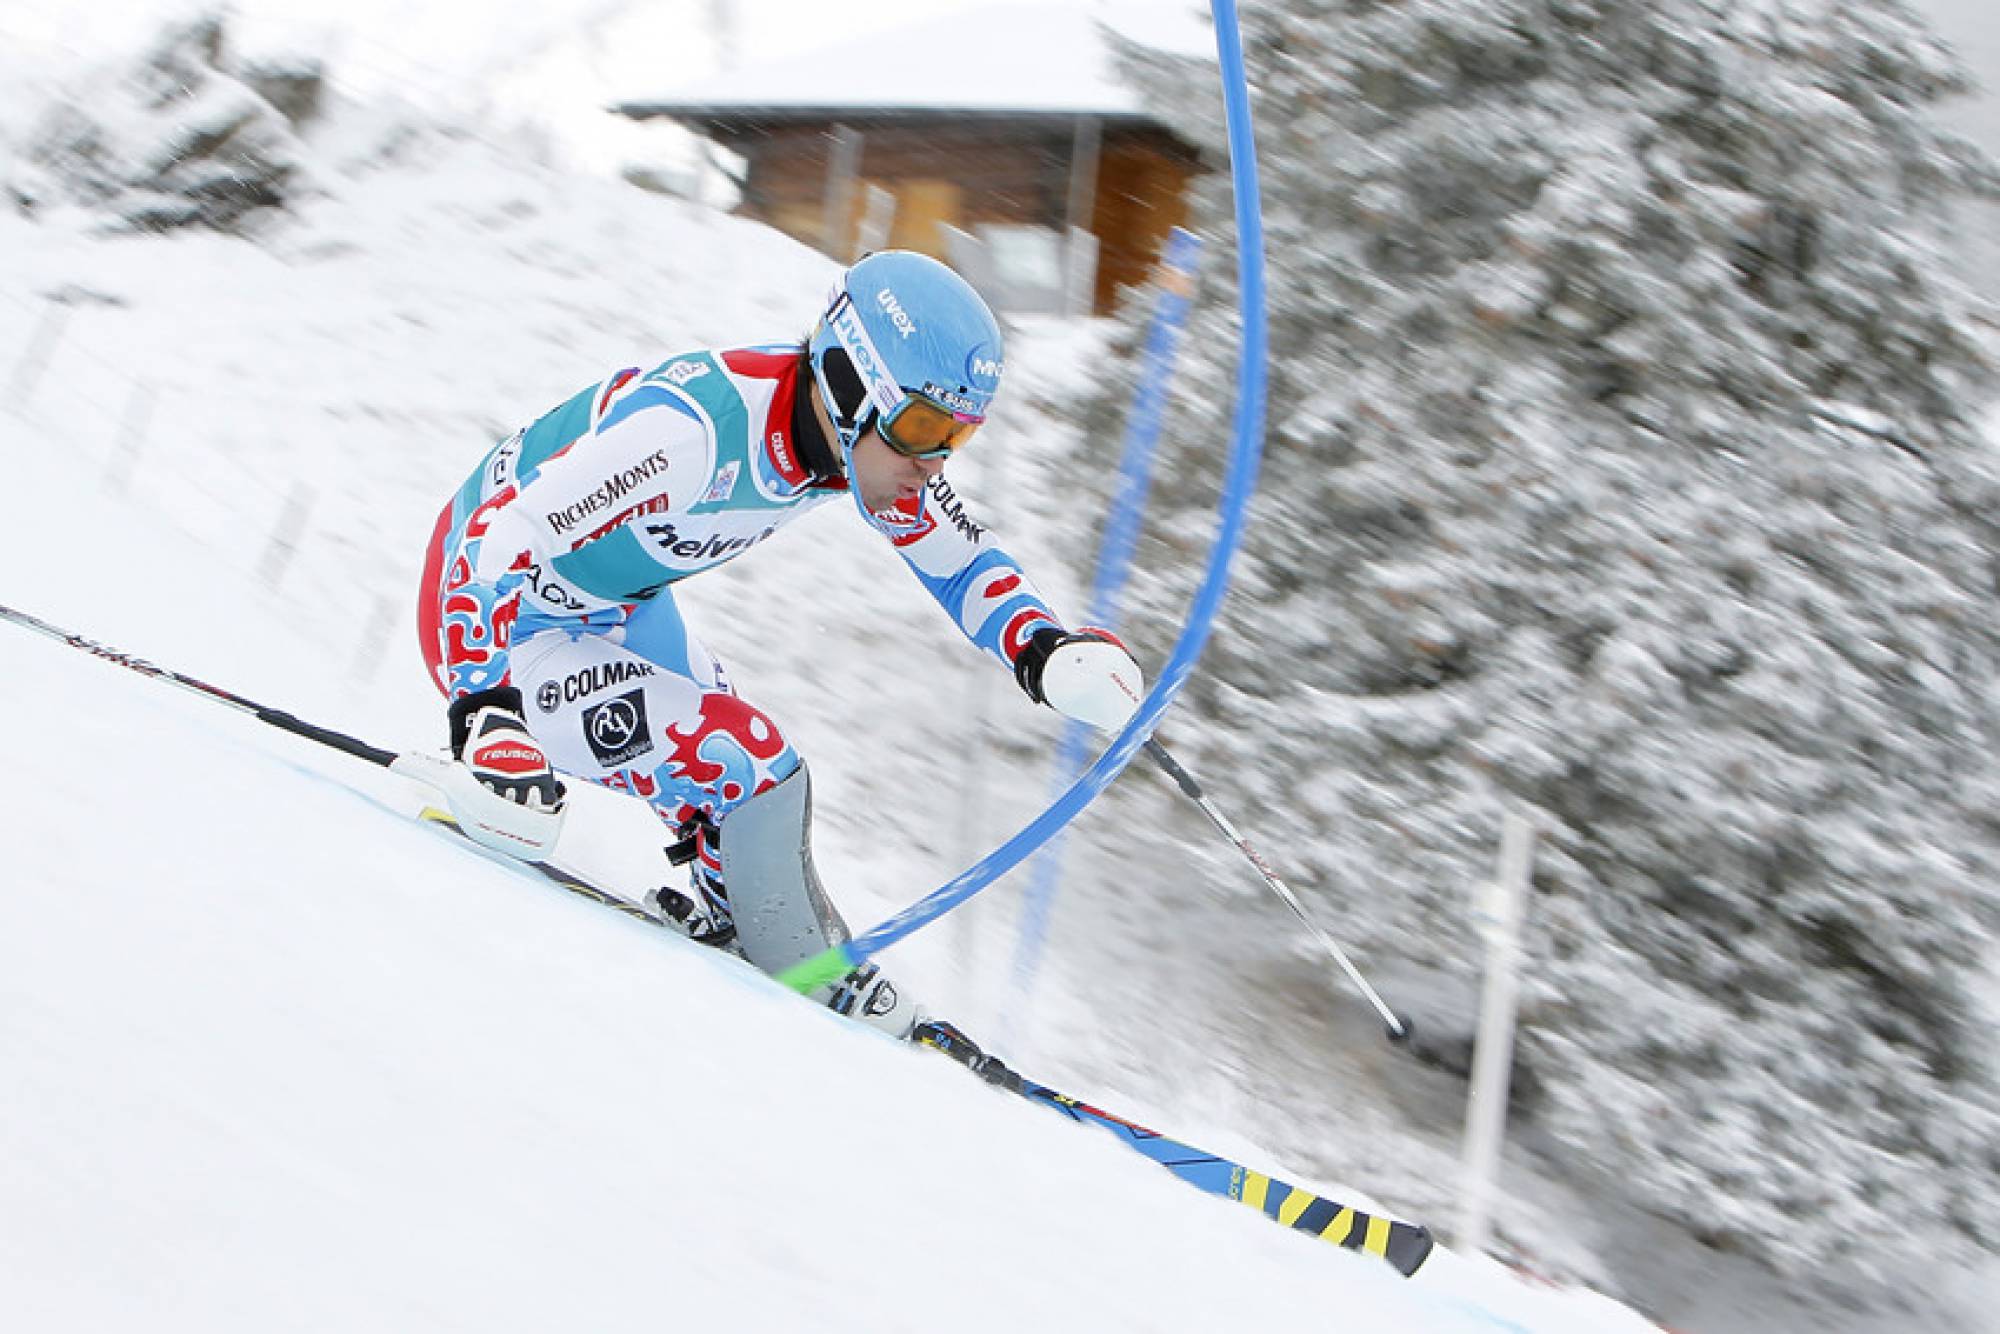 Men's slalom in Adelboden, SUI